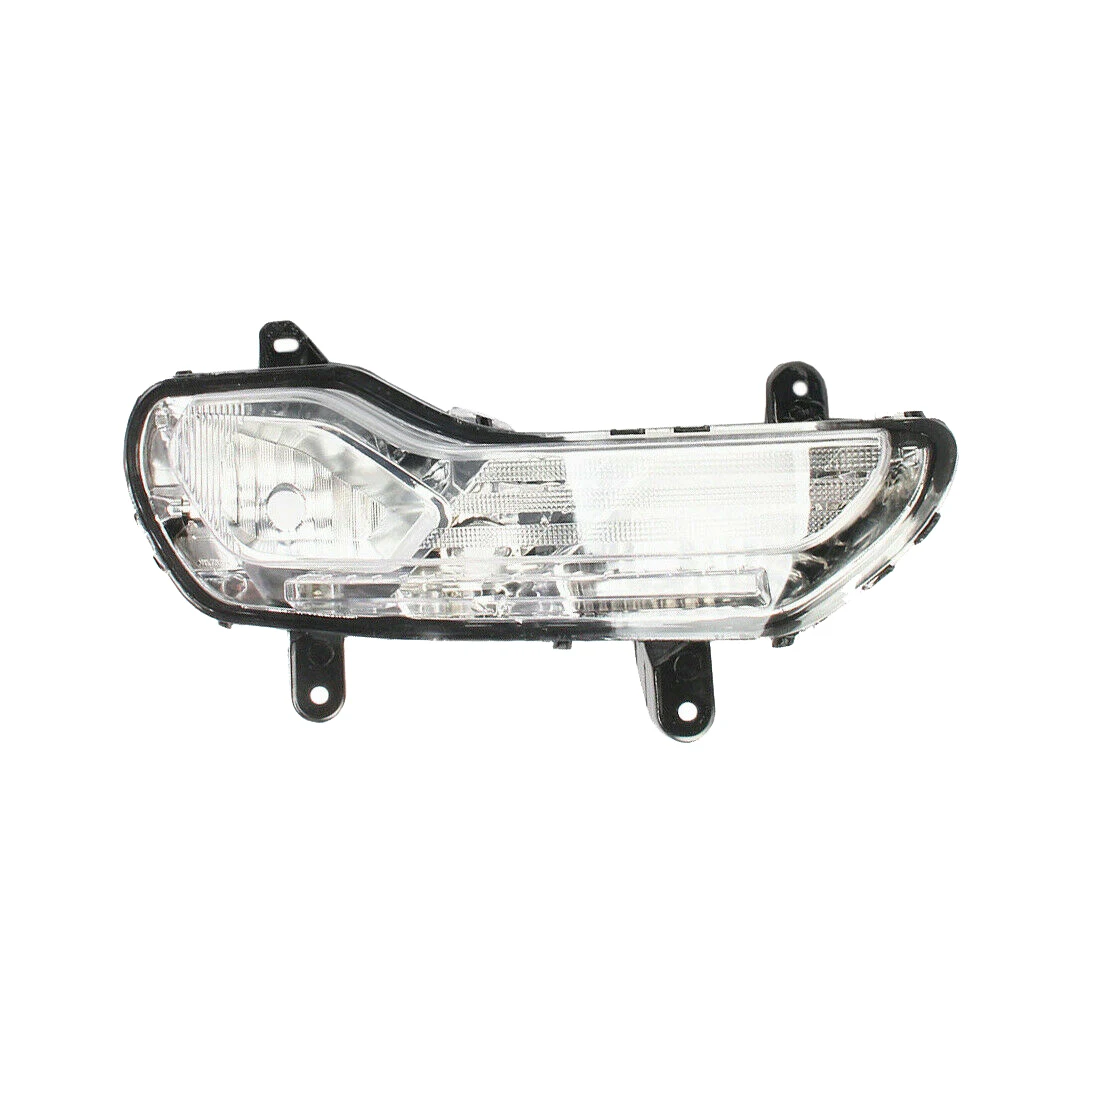 

Передняя правая боковая противотуманная лампа дневного света (без лампочек) подходит для Ford Kuga Escape 2013-16